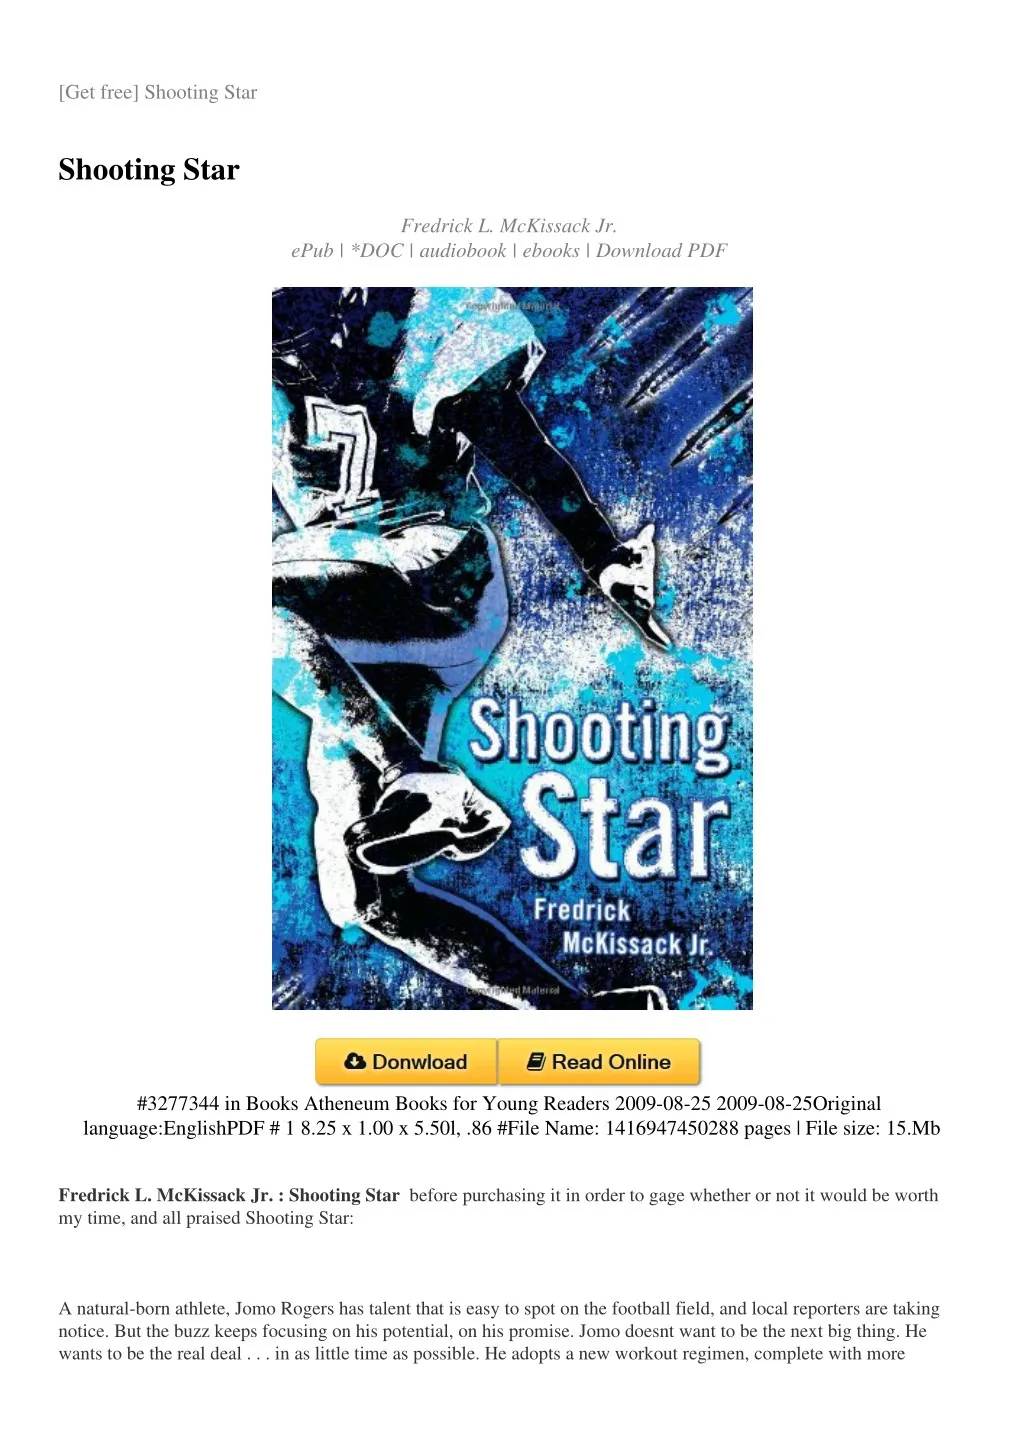 get free shooting star n.